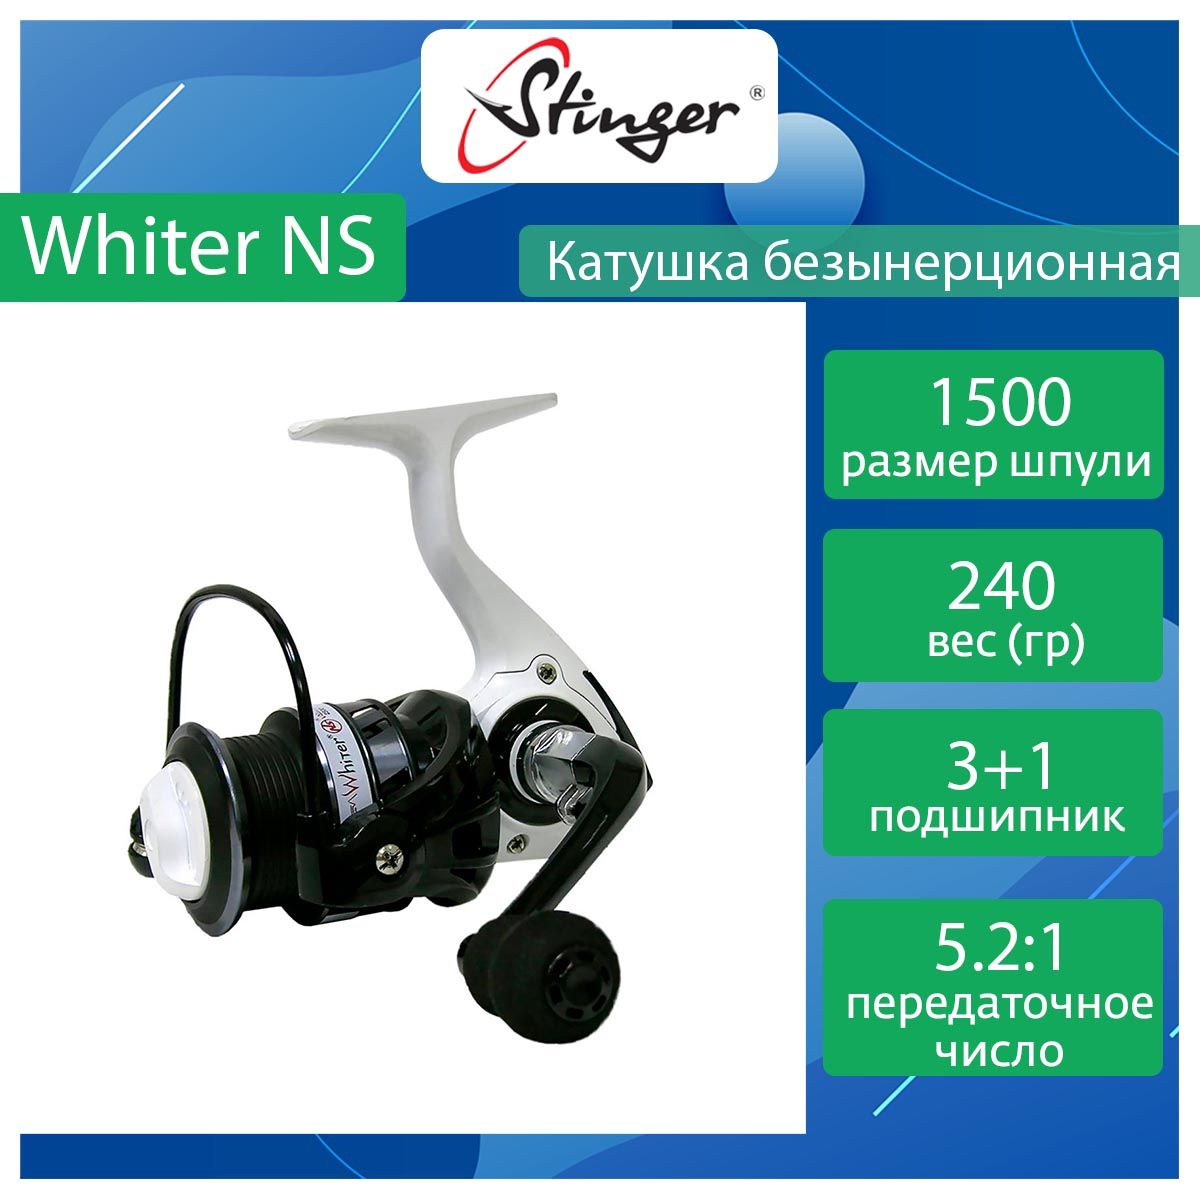 Катушка для рыбалки безынерционная Stinger Whiter NS ef56848